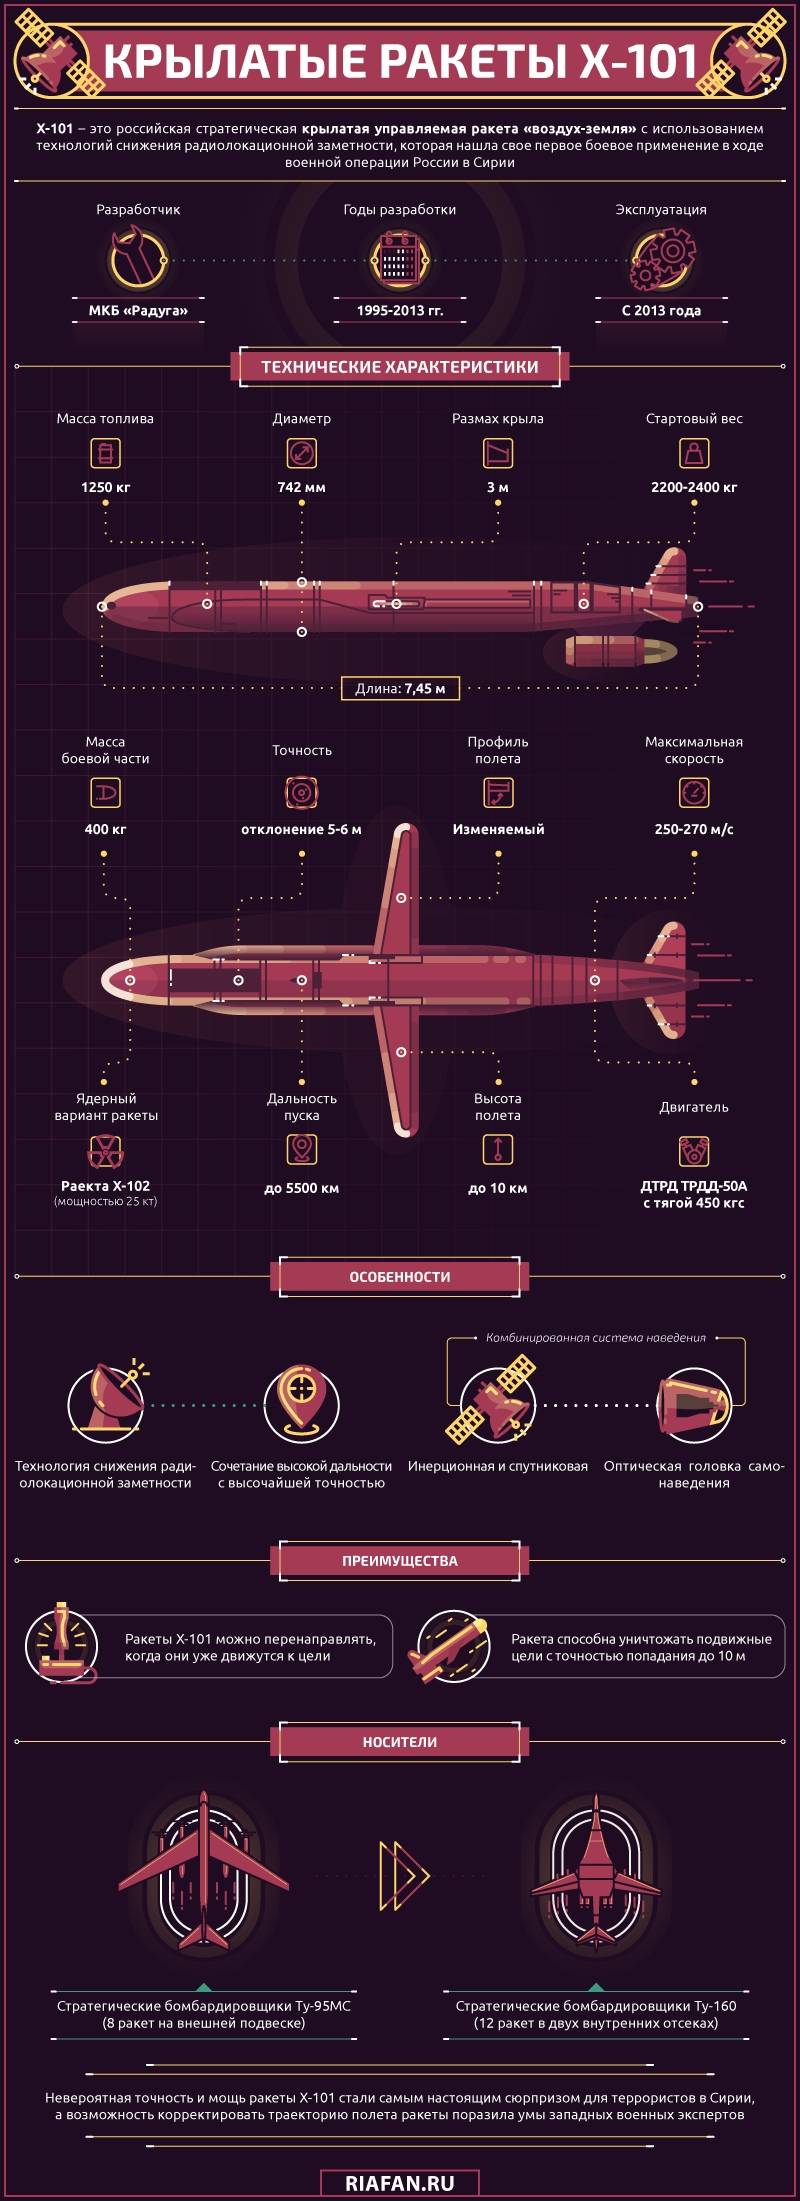 Стратегическая крылатая ракета Х-101. Инфографика